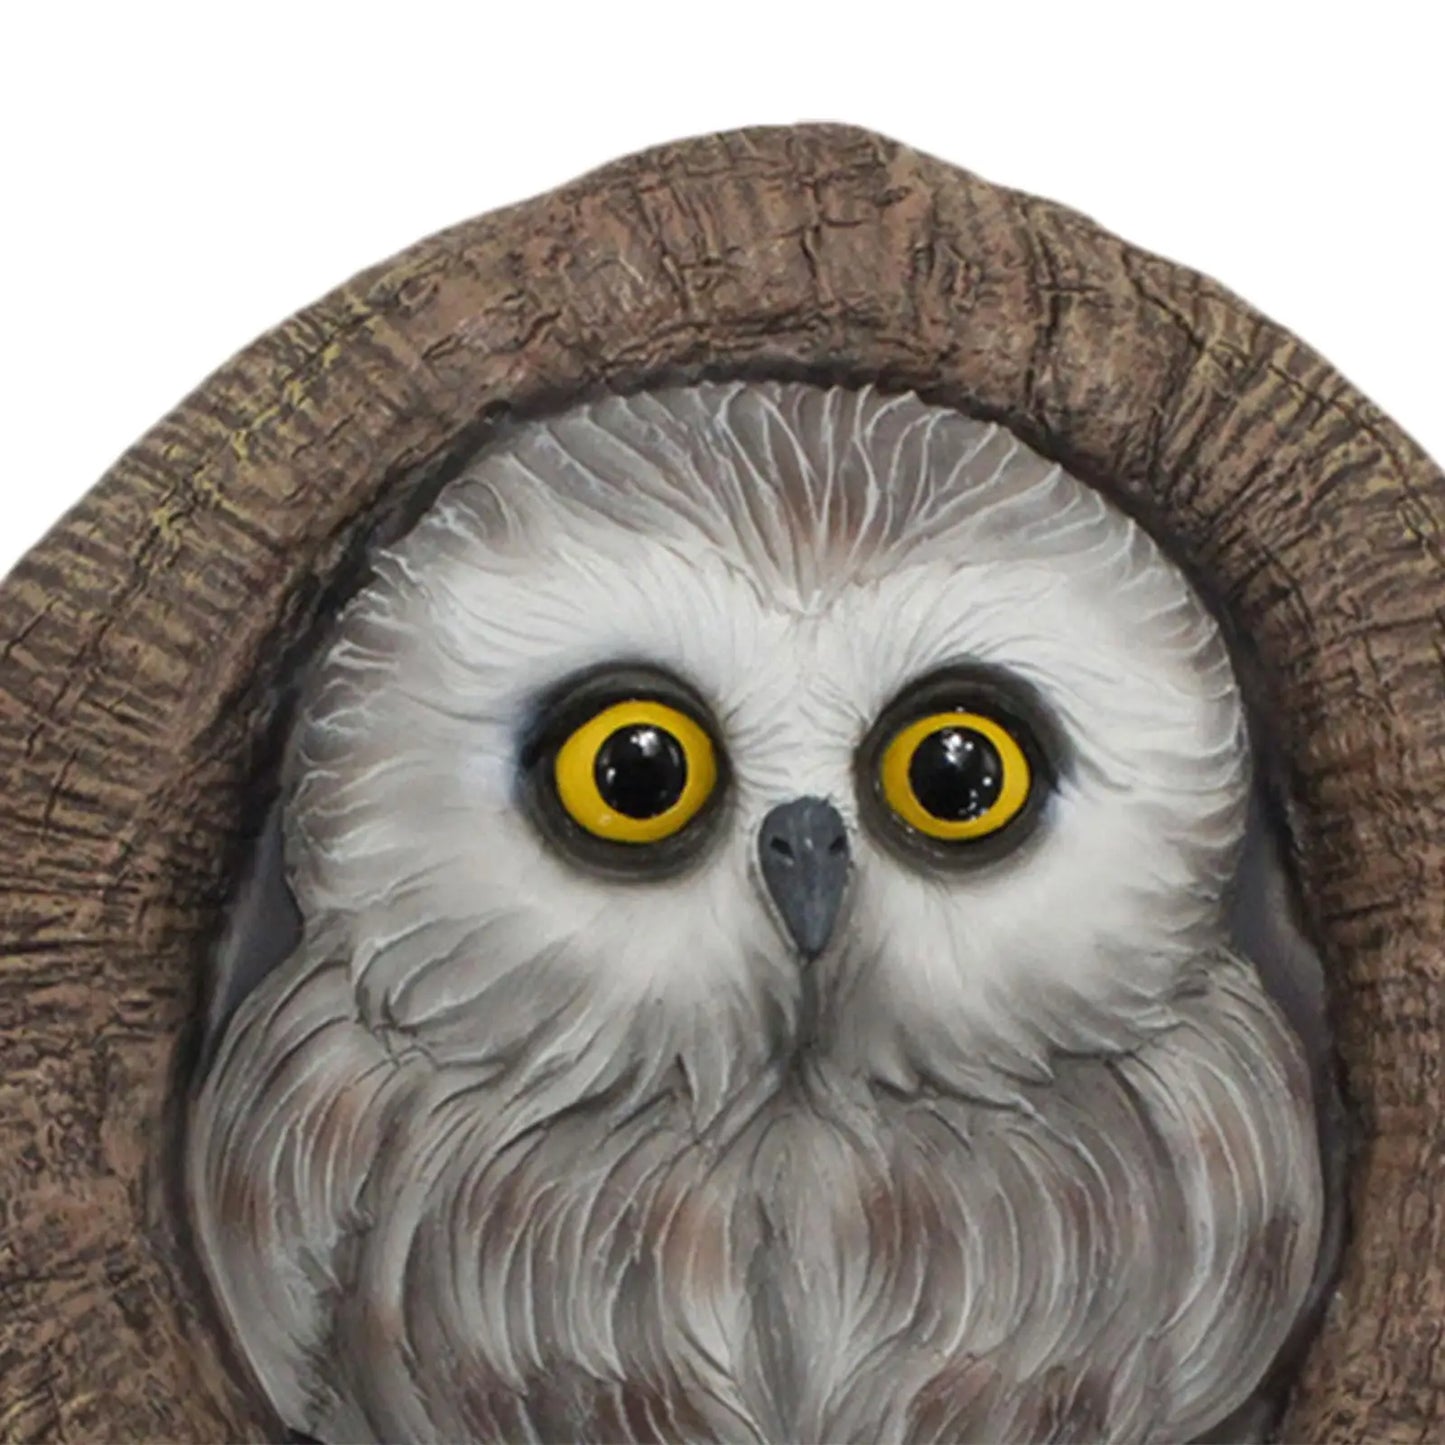 Estátua da Owl Garden Tree Decoration Hand Painted Water resistente à jardinagem Arte para presentes de inauguração de casas Instale facilmente